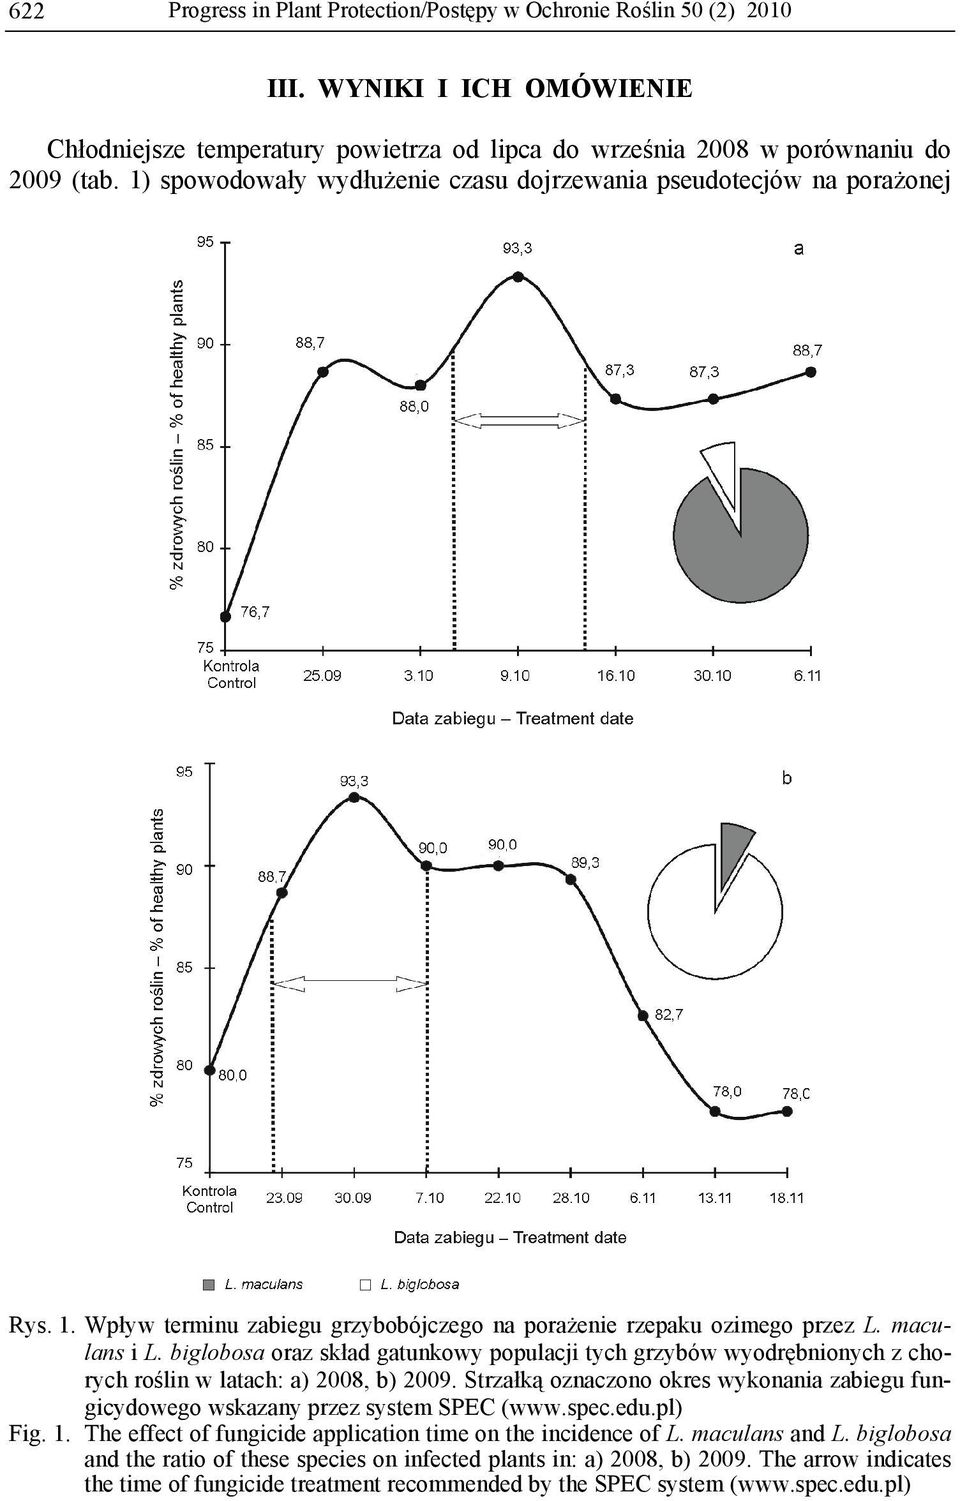 biglobosa oraz skład gatunkowy populacji tych grzybów wyodrębnionych z chorych roślin w latach: a) 2008, b) 2009.